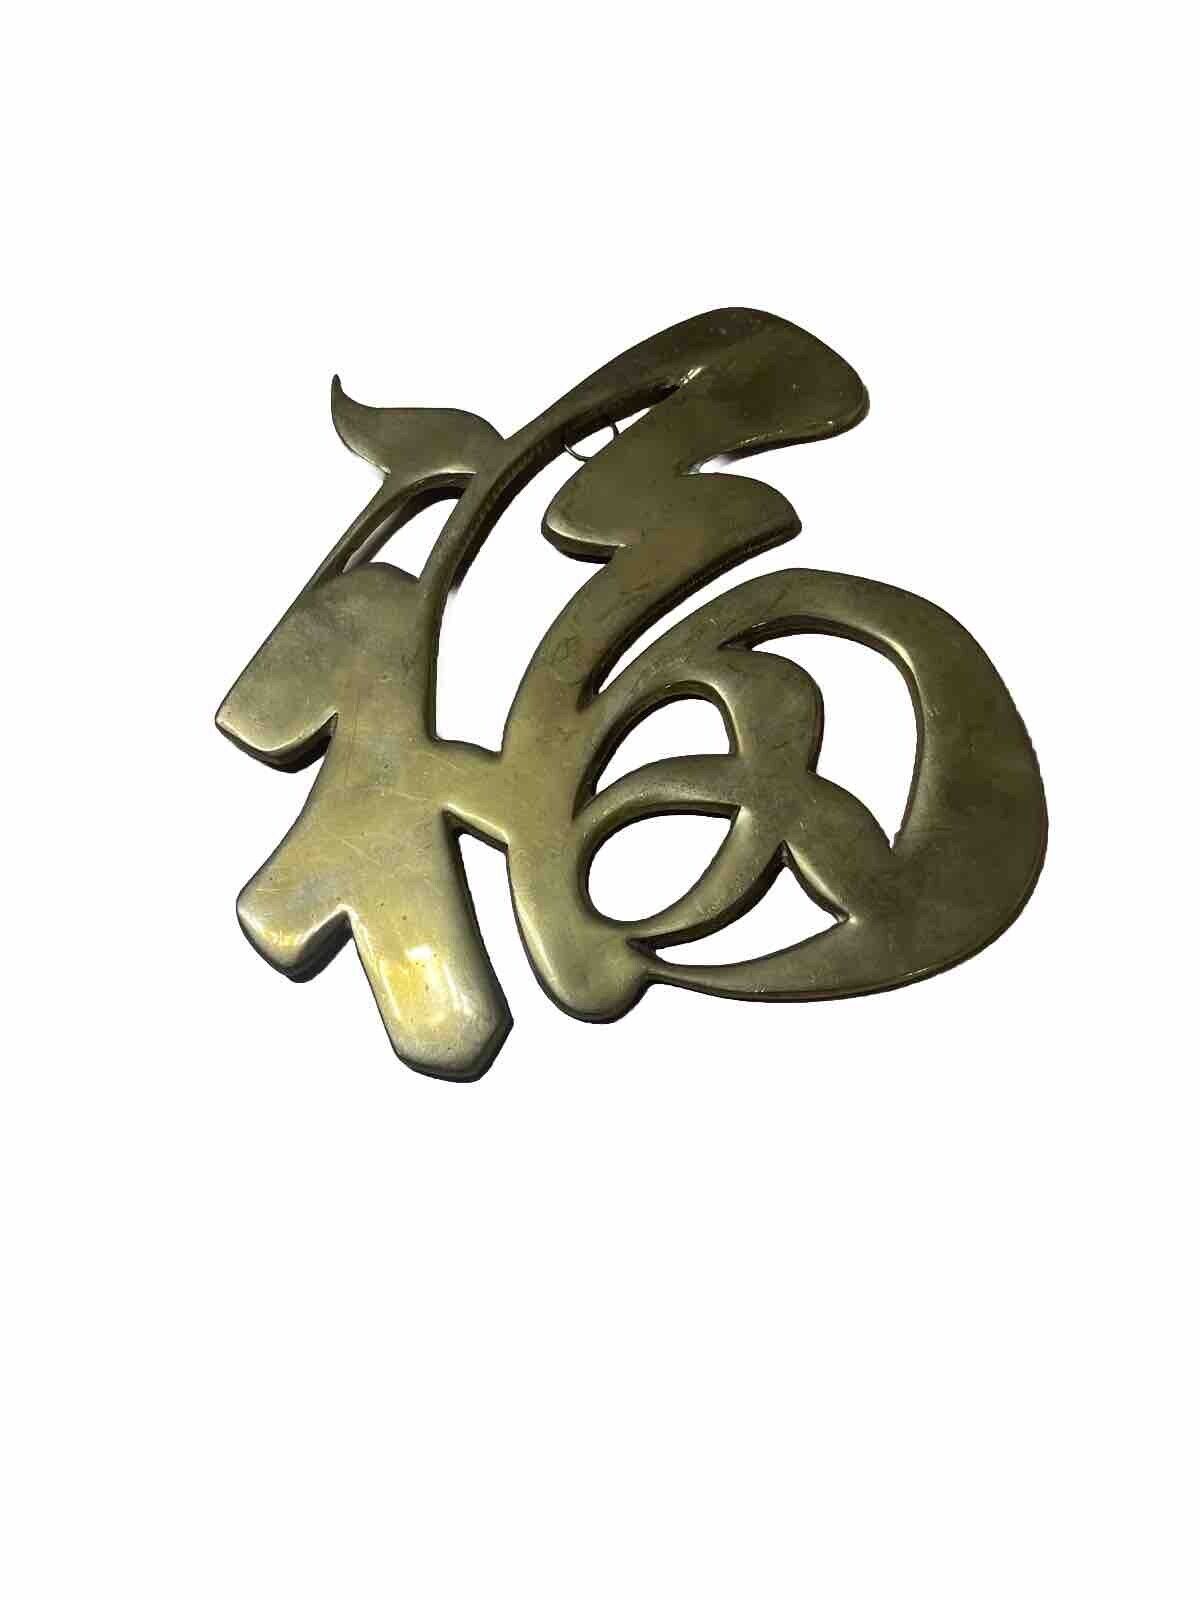 VTG Japanese Asian Symbol Letter Long Life Trivet Wall Decor Brass